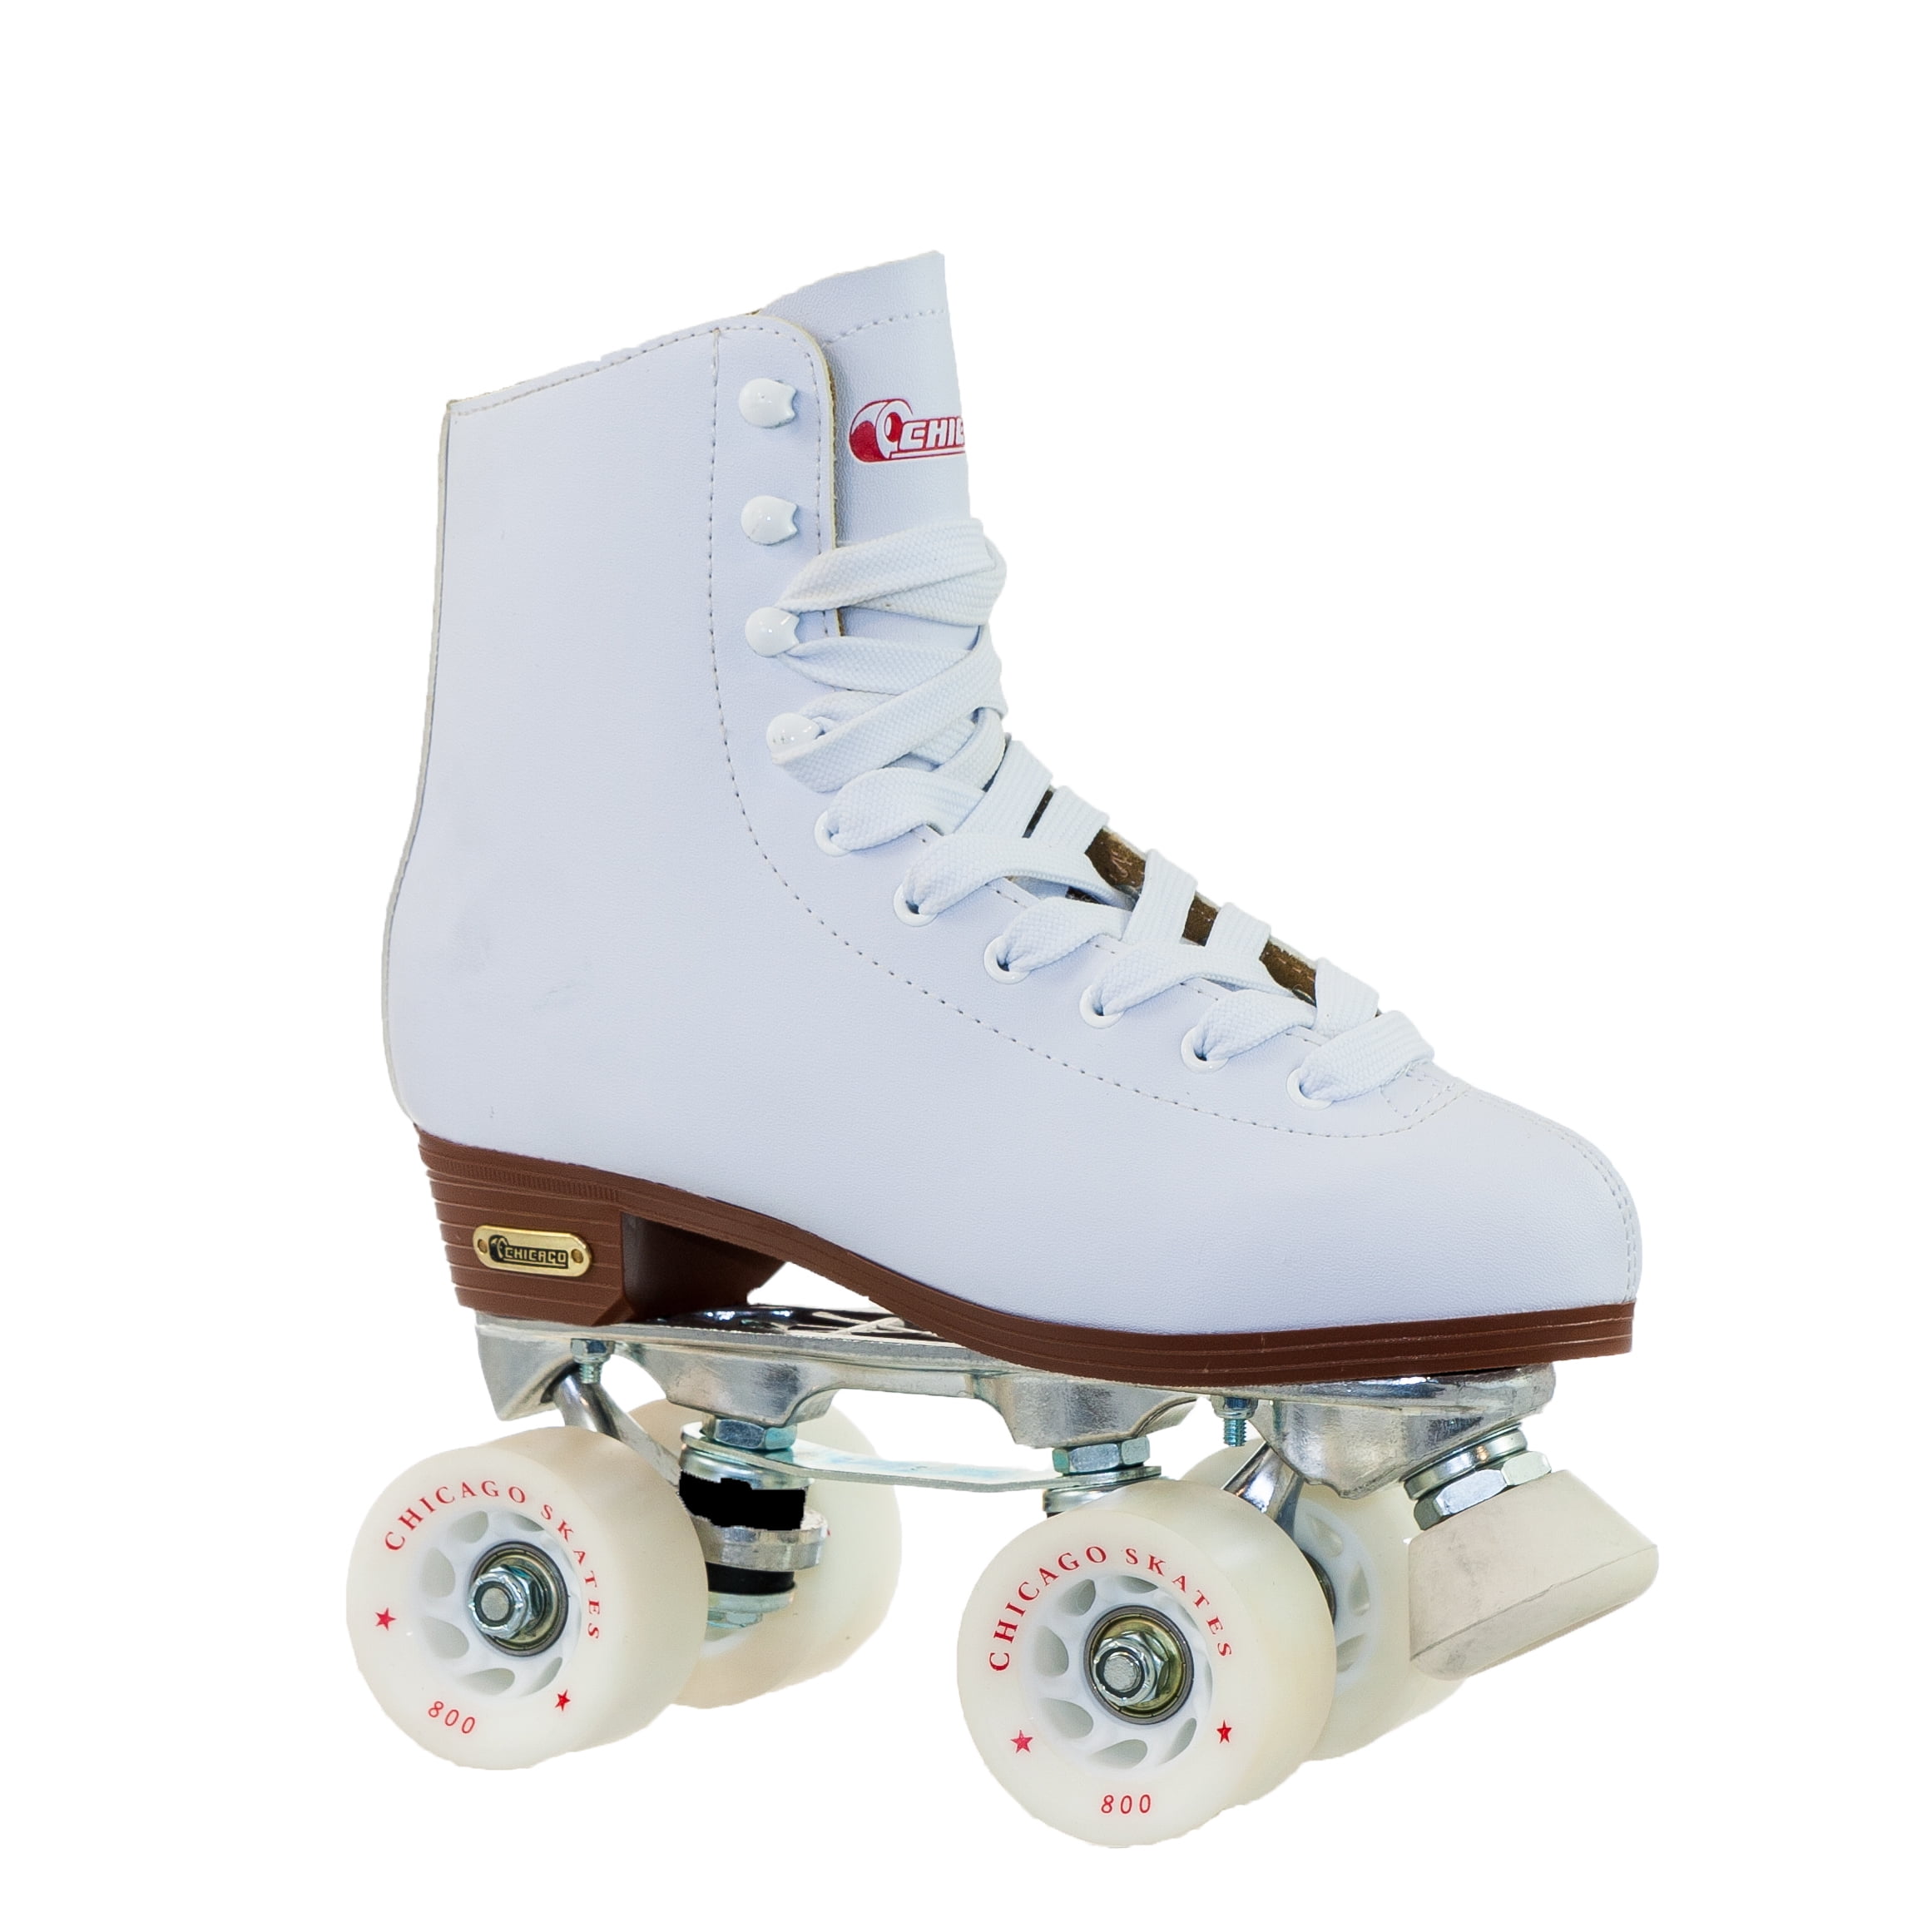 Chicago Skates Crs190002 Girls Rink Skate Size 2 White for sale online 